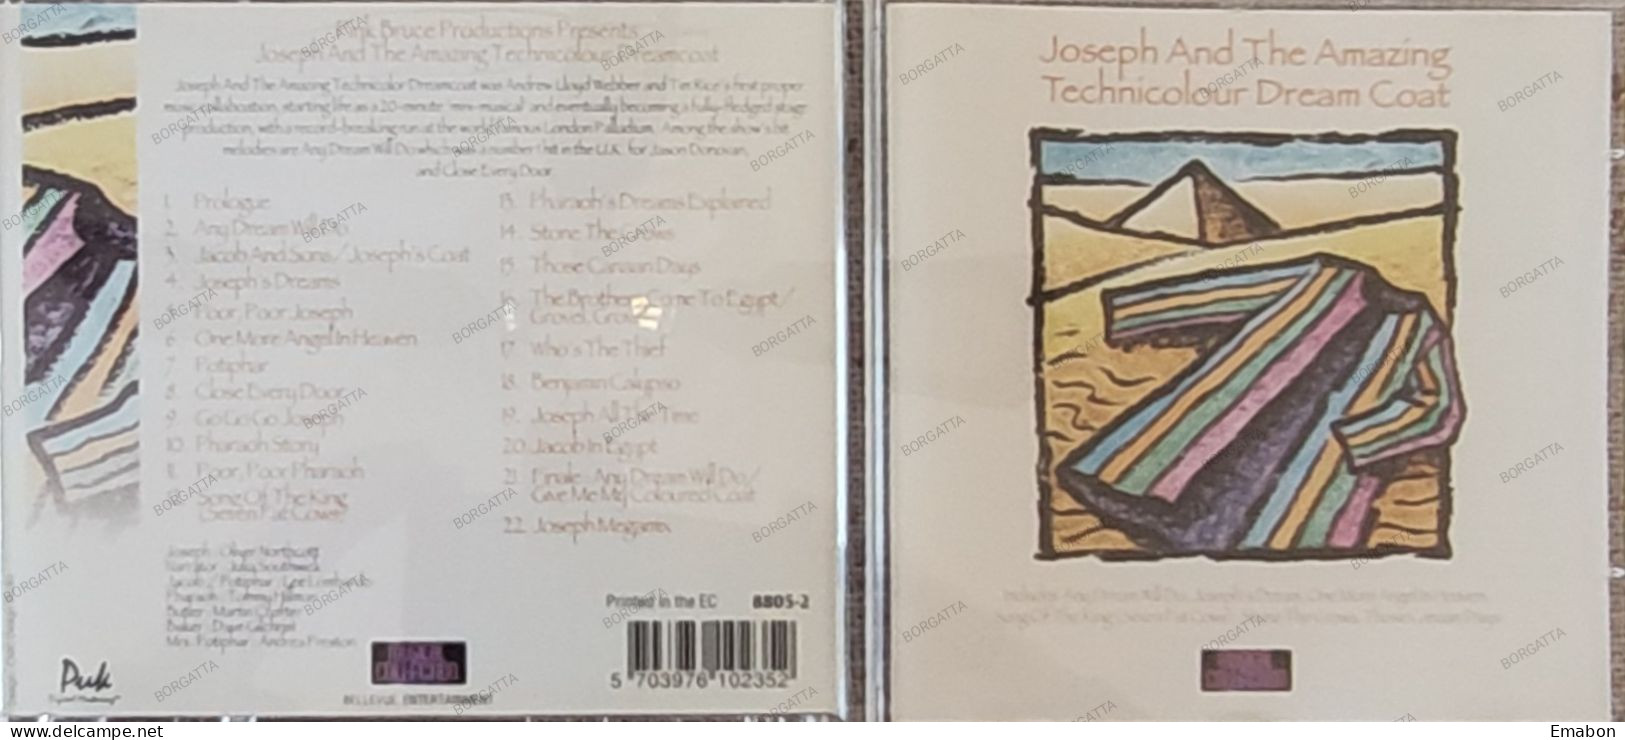 BORGATTA - FILM MUSIC - Cd JOSEPH AND THE AMAZING TECHNICOLOR DREAMCOAT - BELLEVUE 1996 - USATO In Buono Stato - Filmmuziek